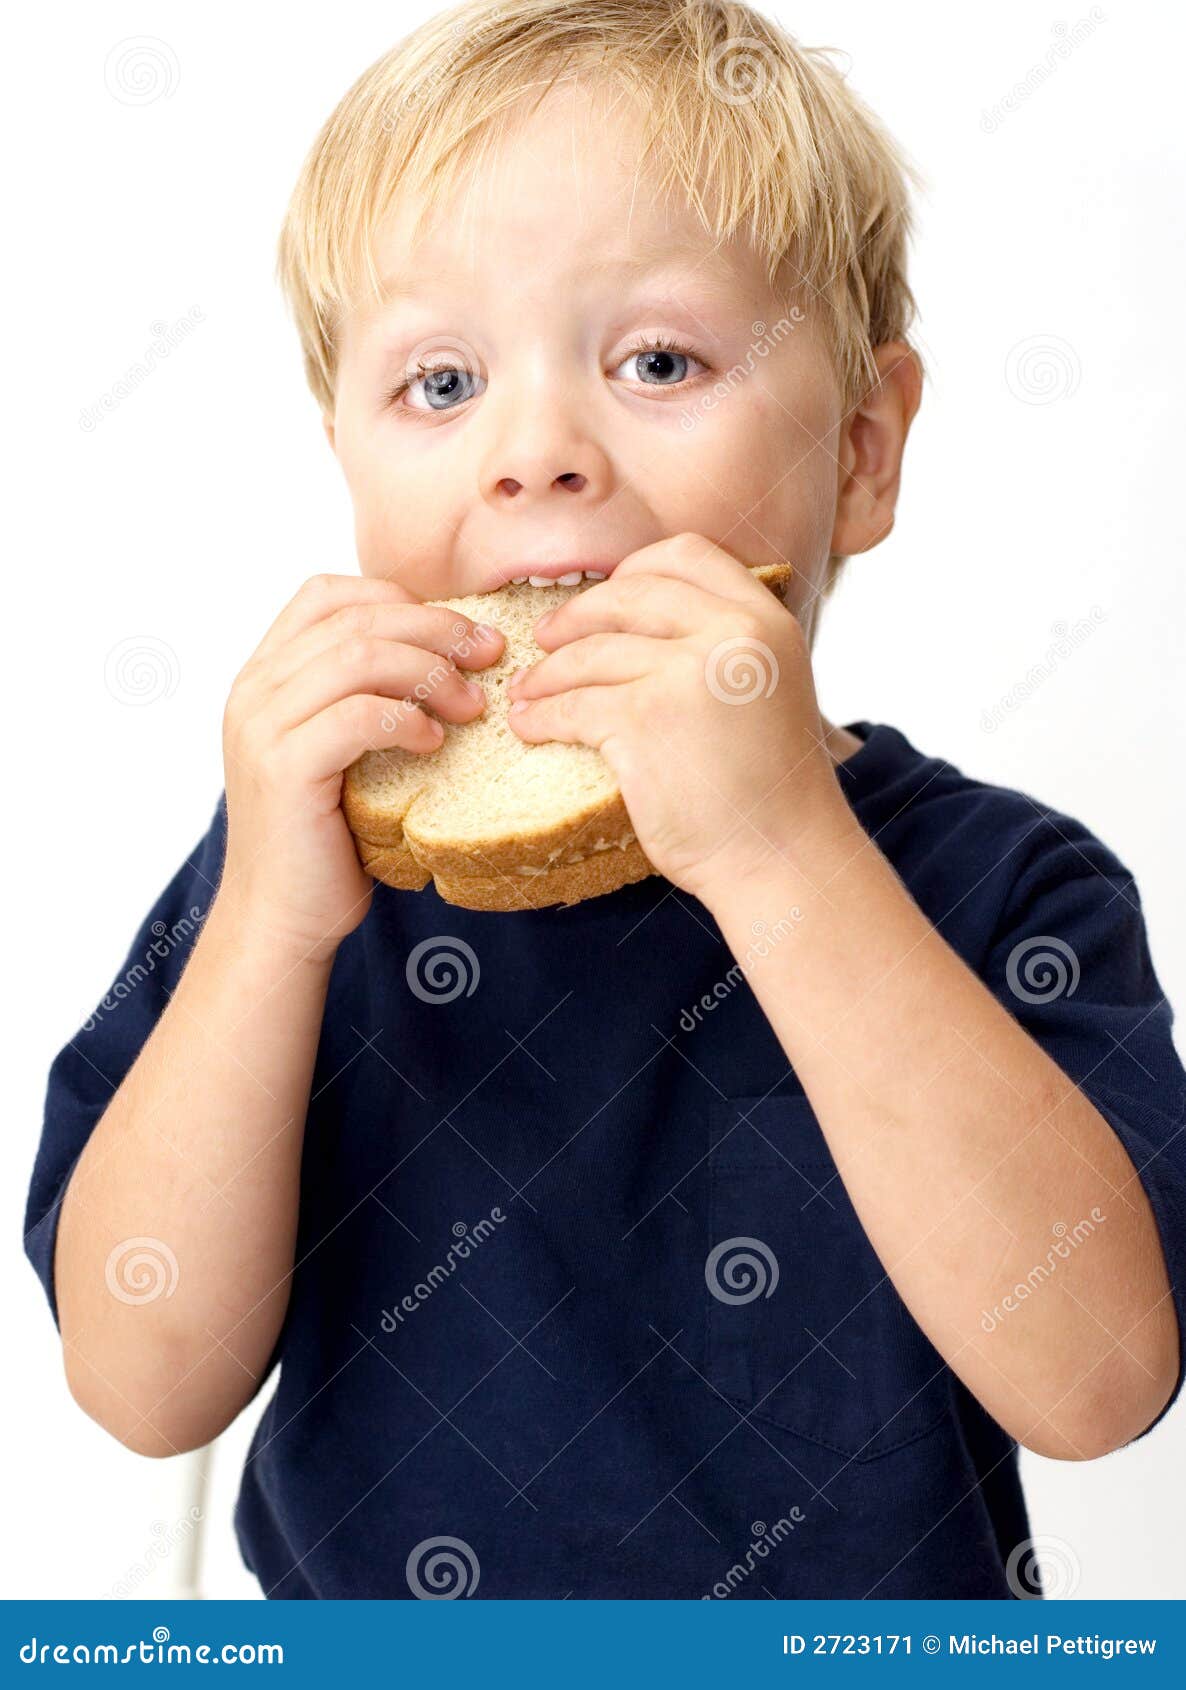 Кусая булочку по переулочку. Мальчик с булочкой. Мальчик ест бутерброд. Мальчик с бутербродом. Ребенок ест хлеб с маслом.